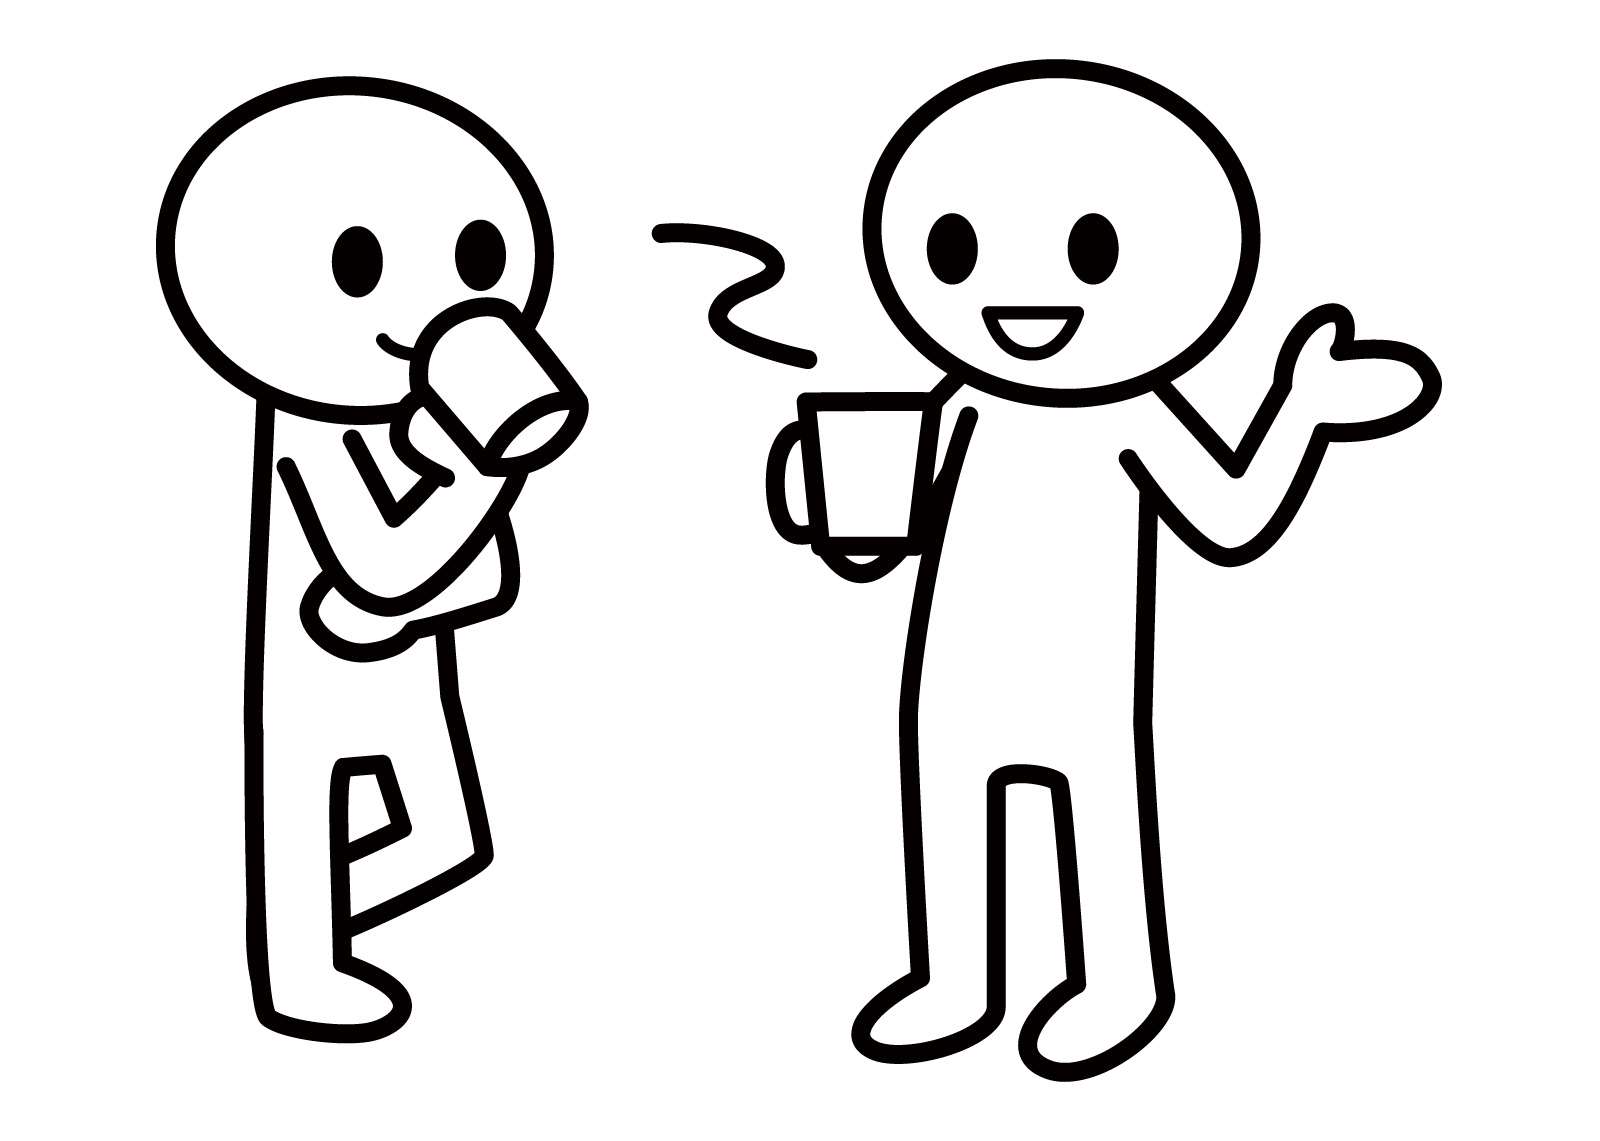 二人の人が飲み物を片手に談笑しているイラストです